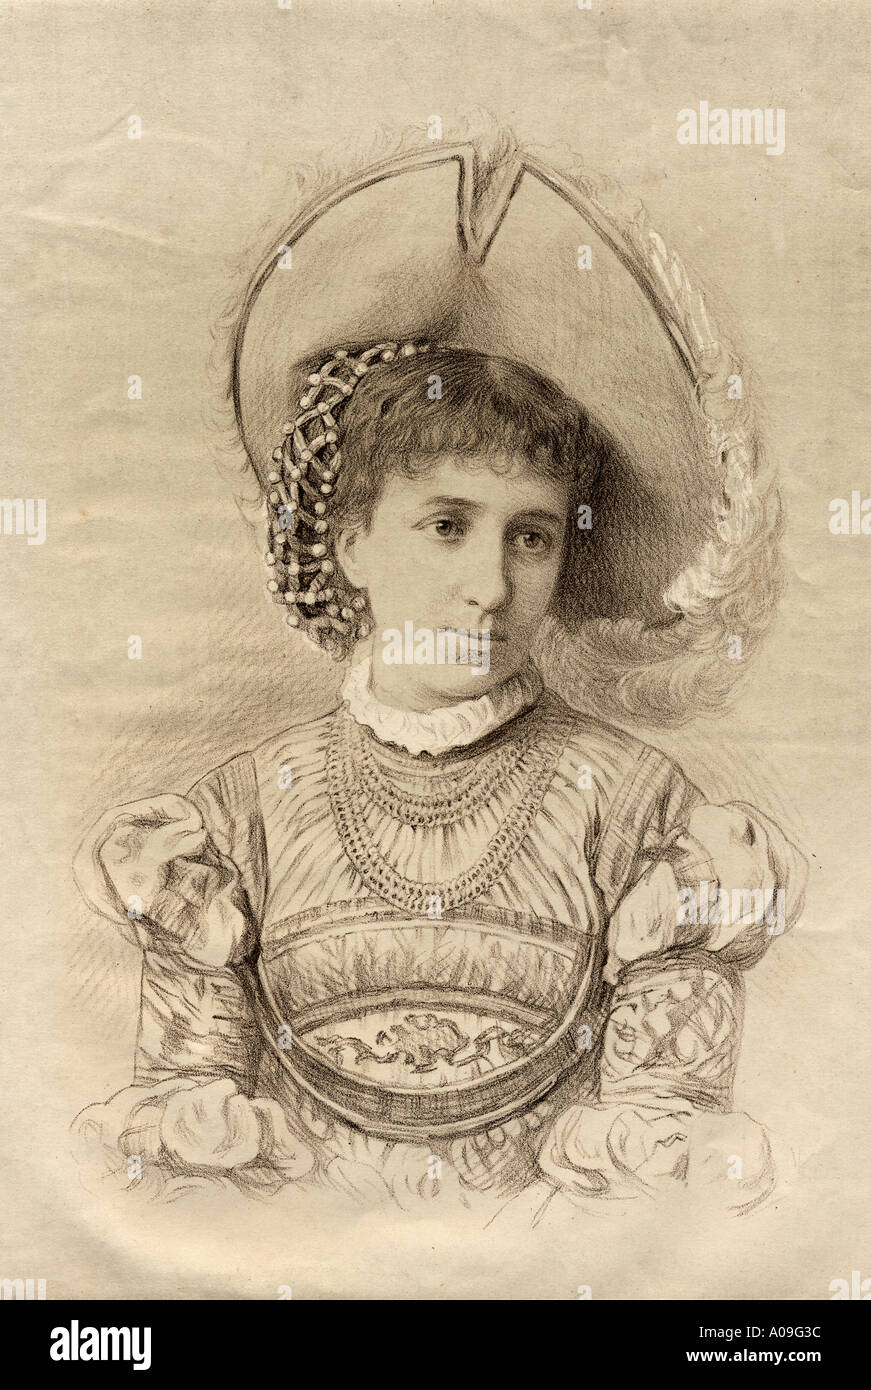 Maria Cristina Deseada Enriqueta Felicidad Raniera de Asburgo Lorena, 1858-1929. L'arciduchessa d'Austria e della regina di Spagna come la moglie di Alfonso XI. Foto Stock